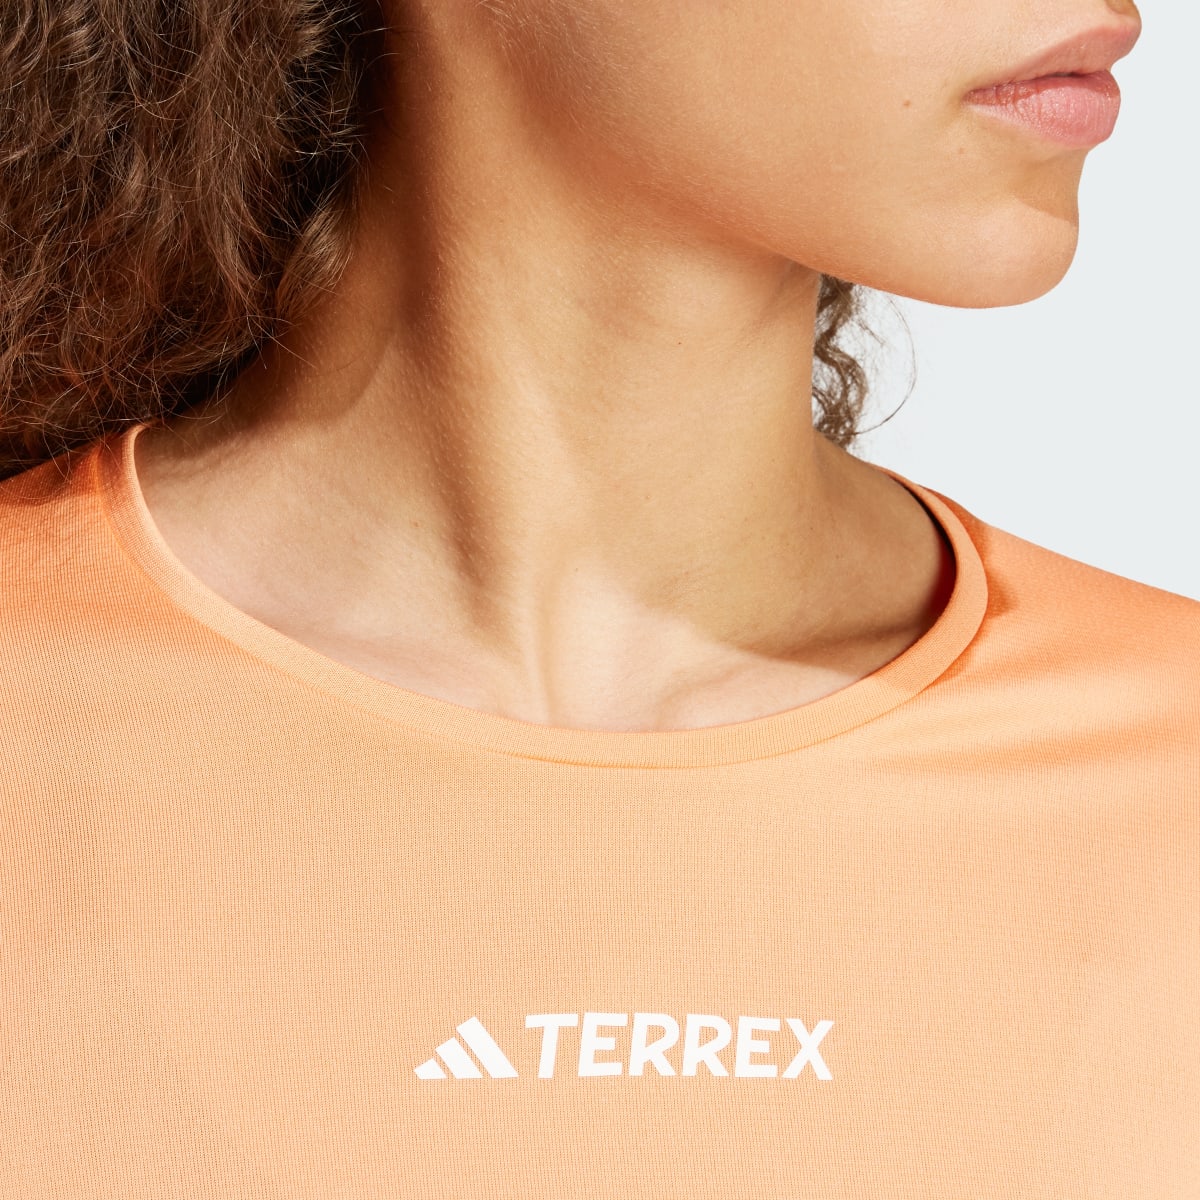 Adidas Camiseta Terrex Multi. 6